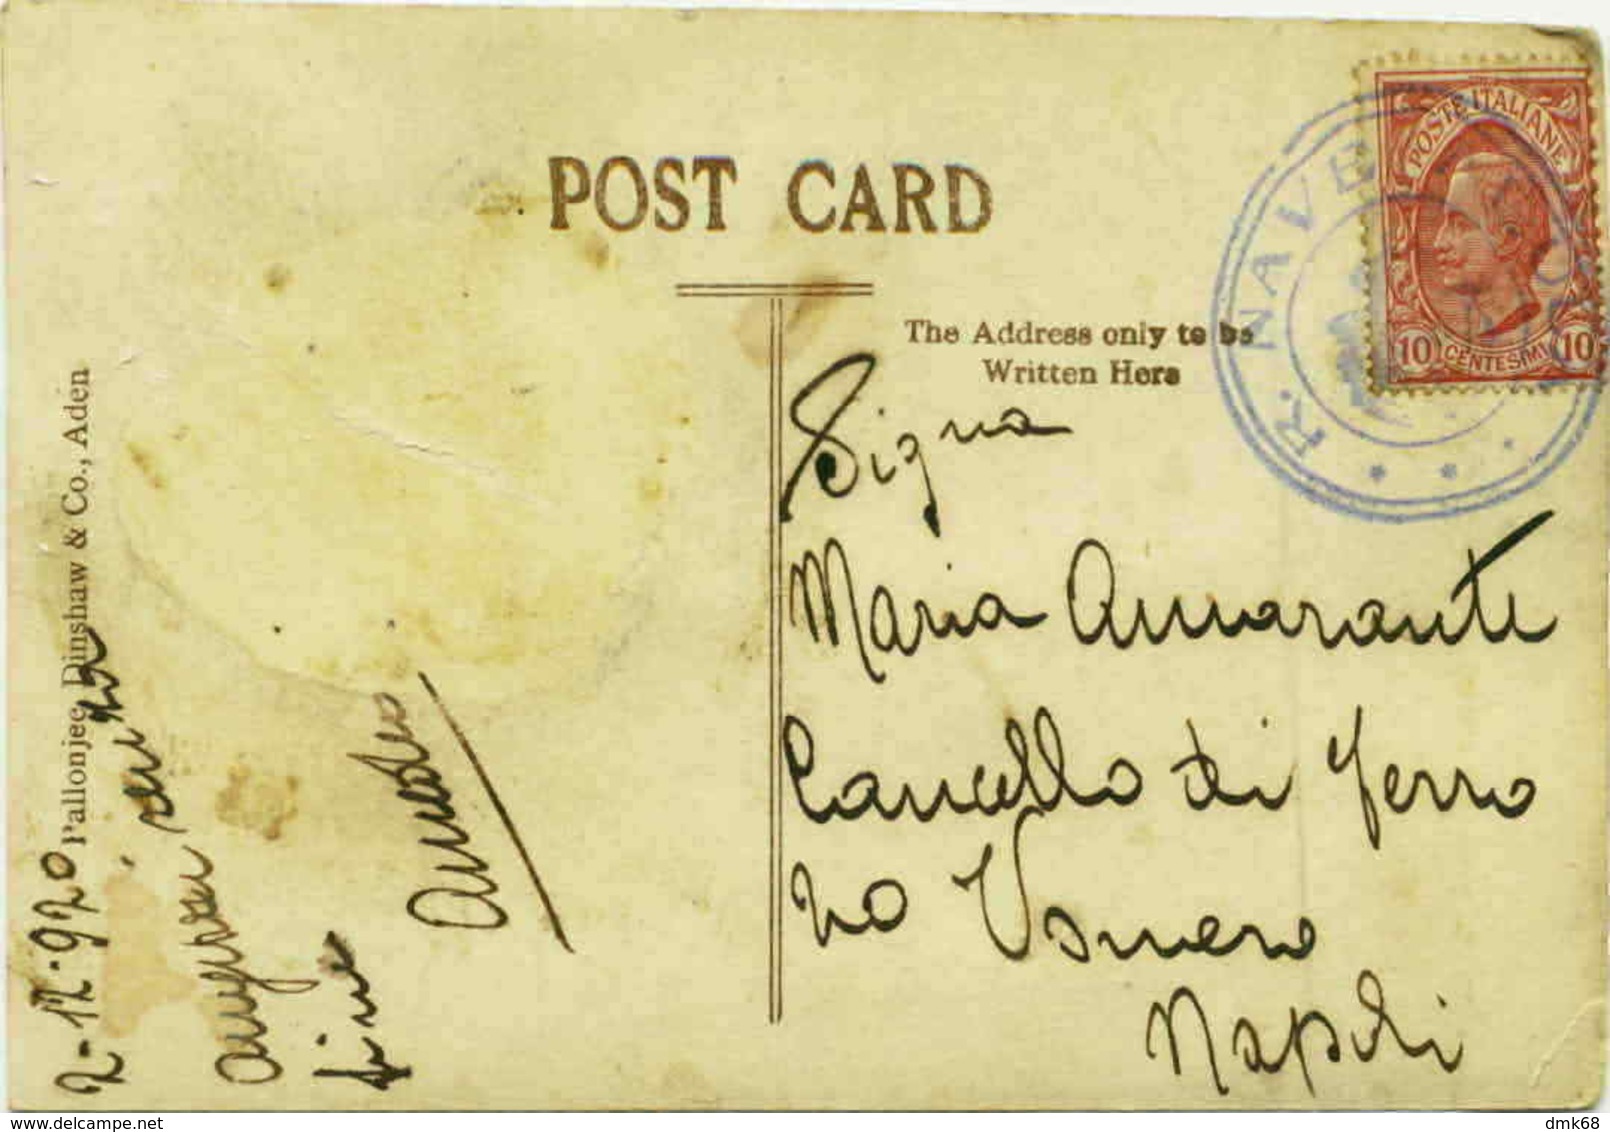 ADEN - PEACE CELEBRATION -  BOAT POSTMARK / ANNULO DI BORDO -  REGIA NAVE ALULA - RARE - 1920s (2982) - Yemen